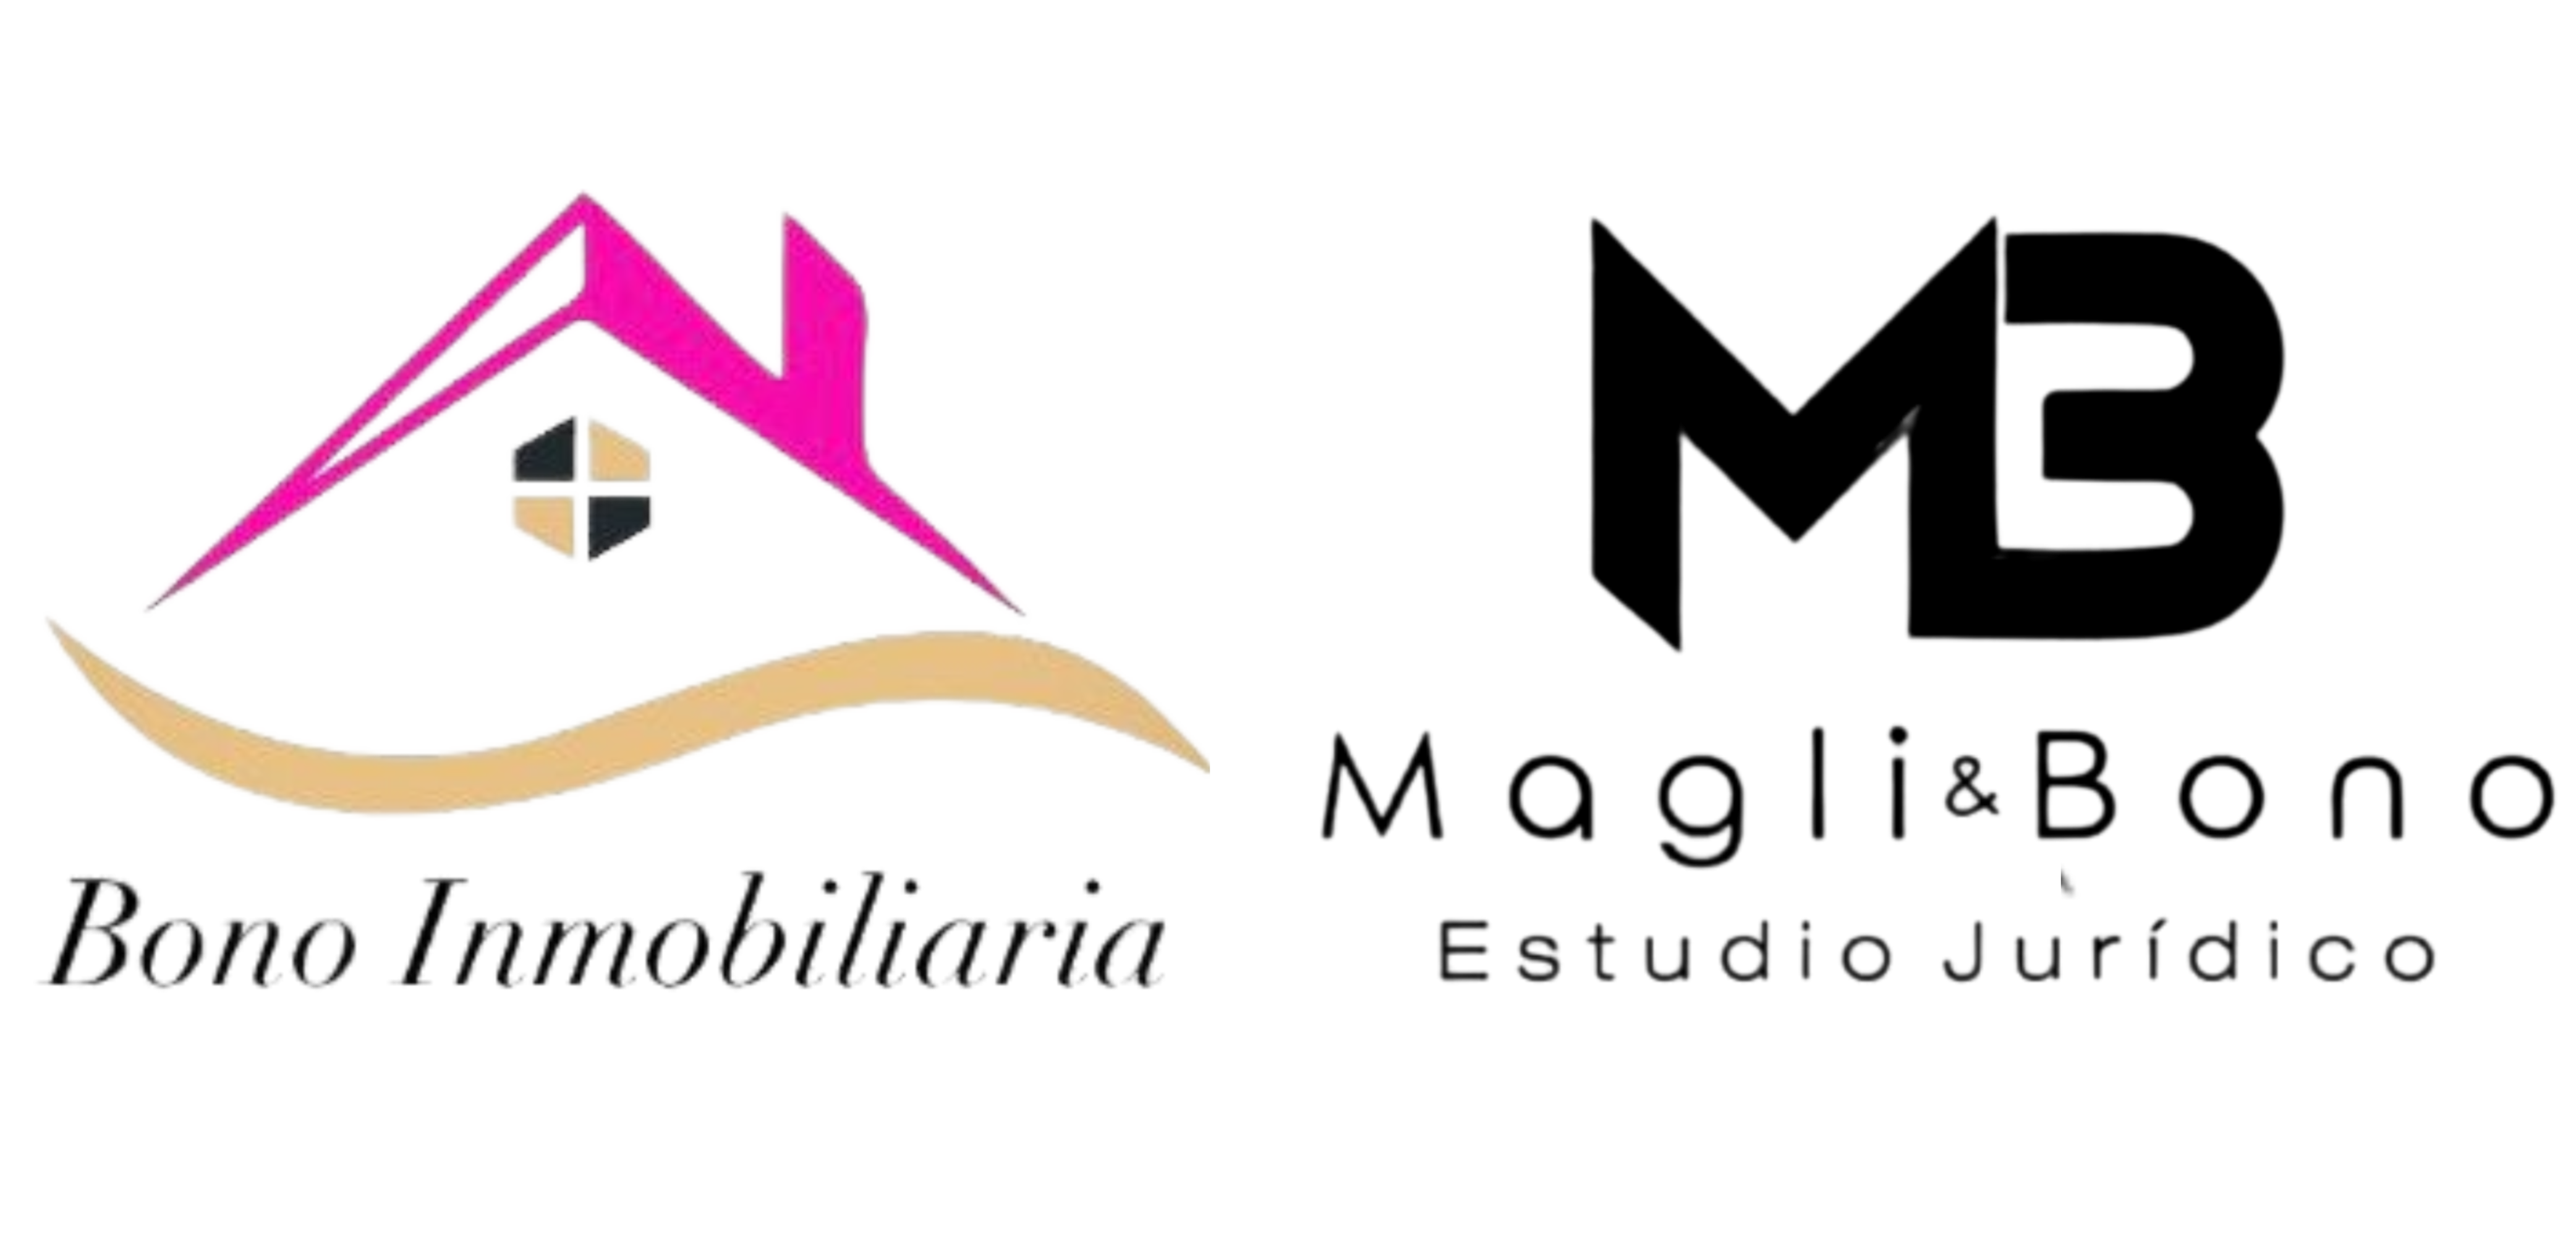  logo.png